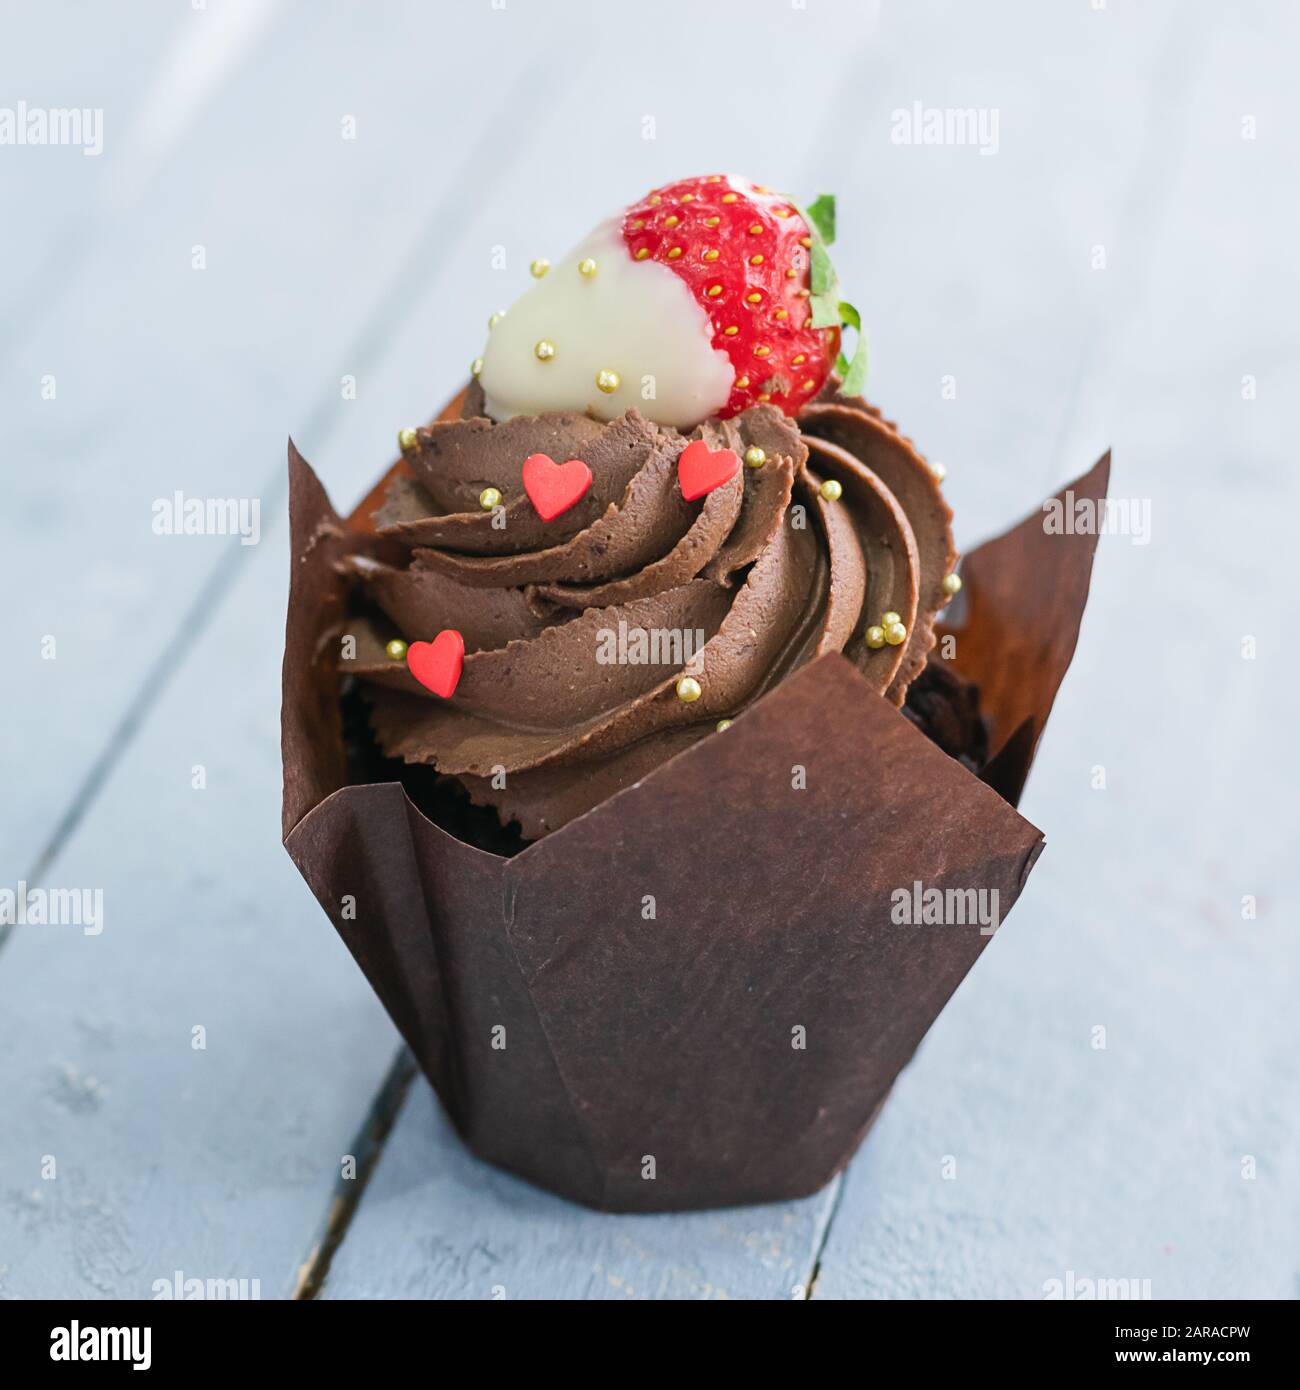 Gâteau au muffin au chocolat avec crème et décoration sous forme de coeur sur fond gris. Concept d'amour de Saint-Valentin. Cadre carré gros plan sélectionné Banque D'Images